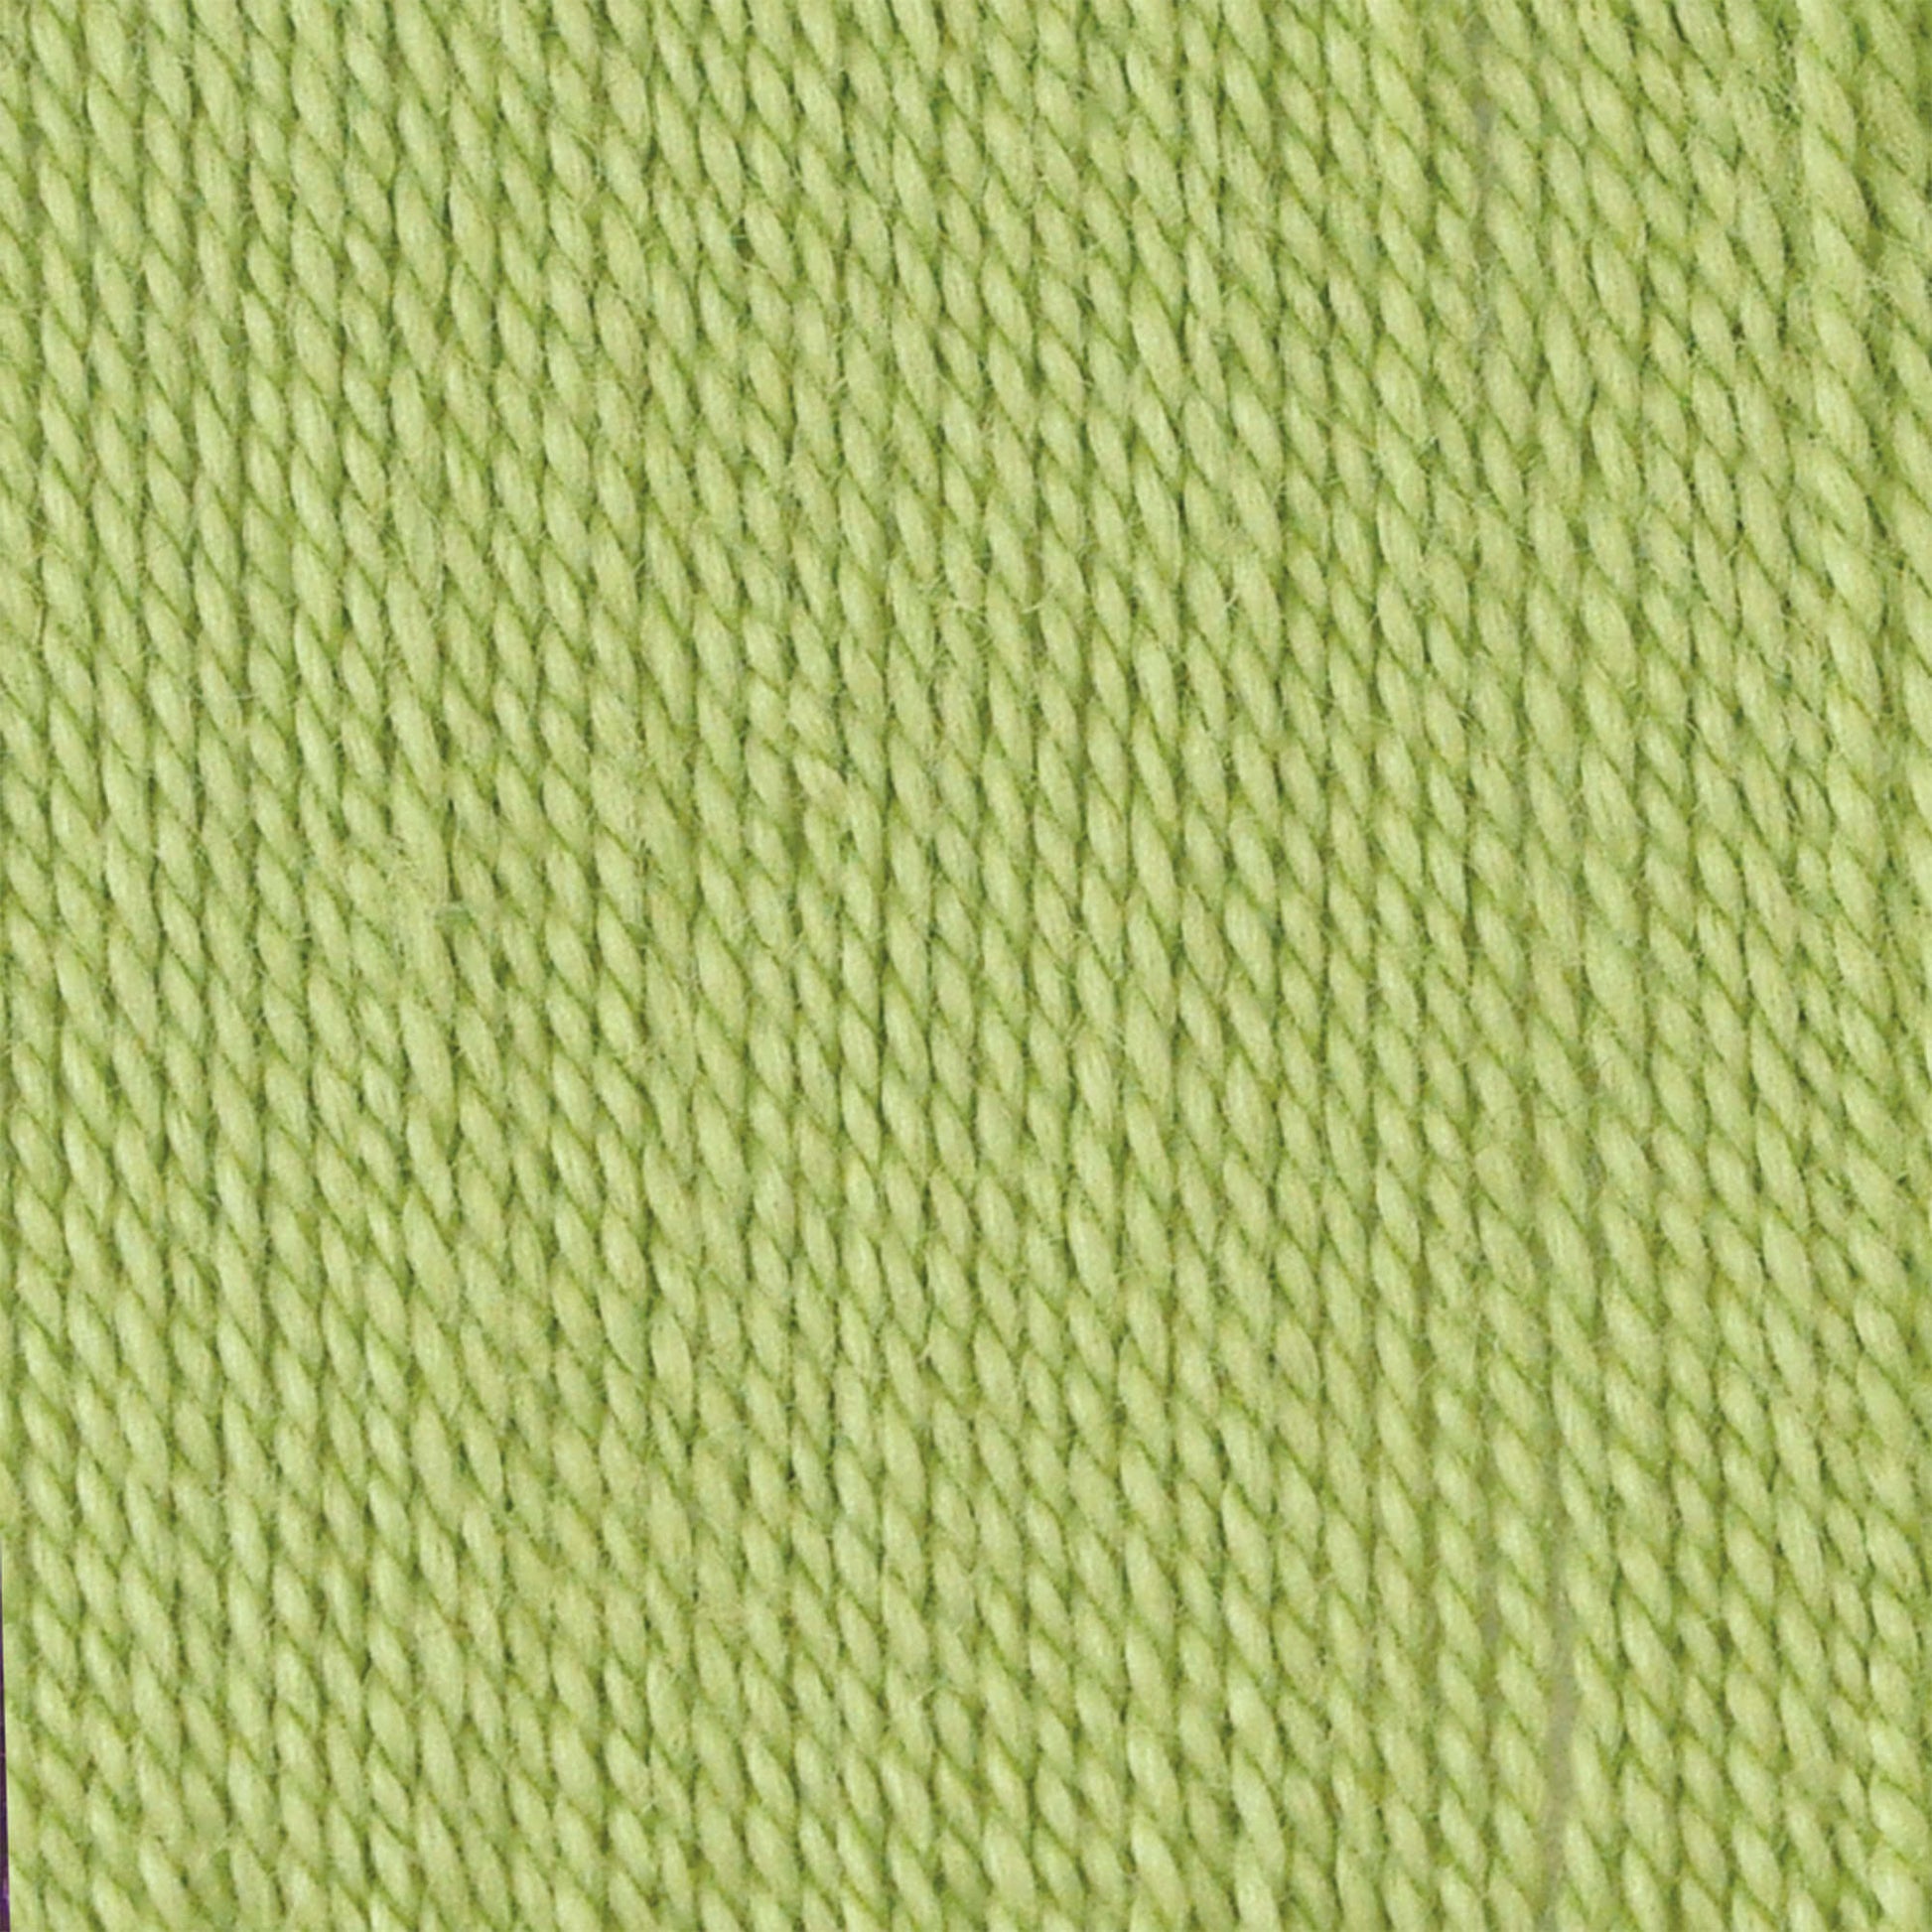 Bernat Handicrafter Crochet Thread - Discontinued Fresh Fern